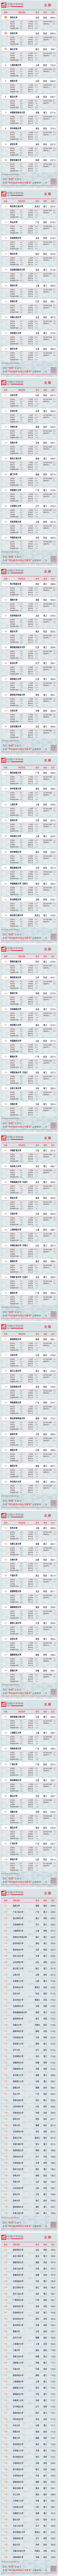 2021年软科中国大学排名600强榜单（主榜）